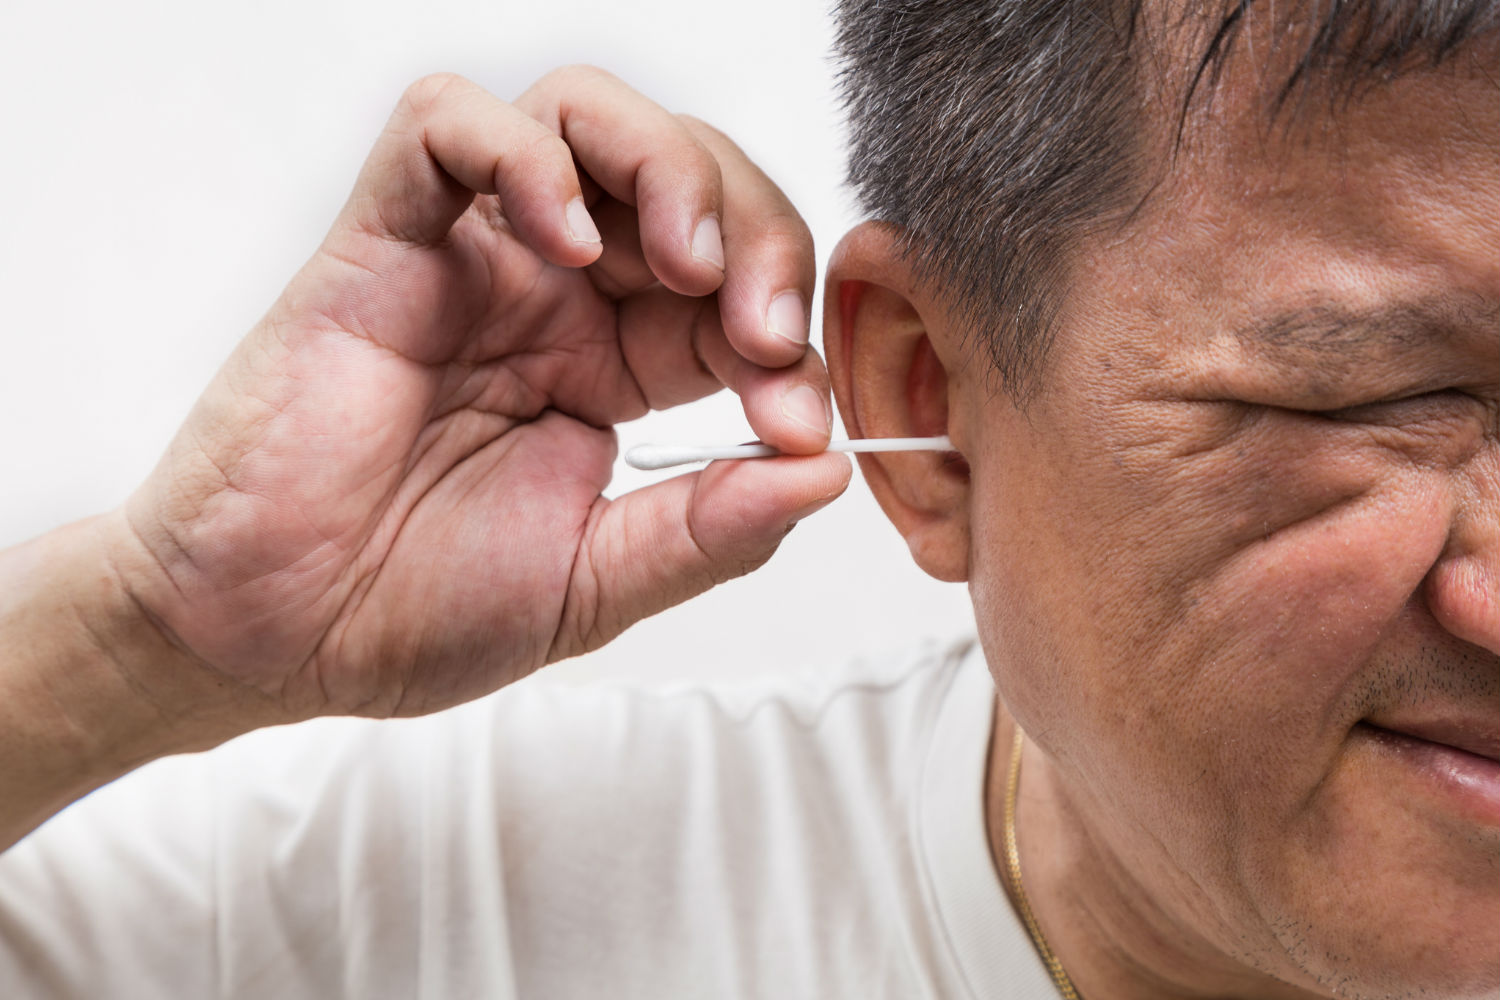 Bougie auriculaire - Nettoyer les oreilles sans coton-tige